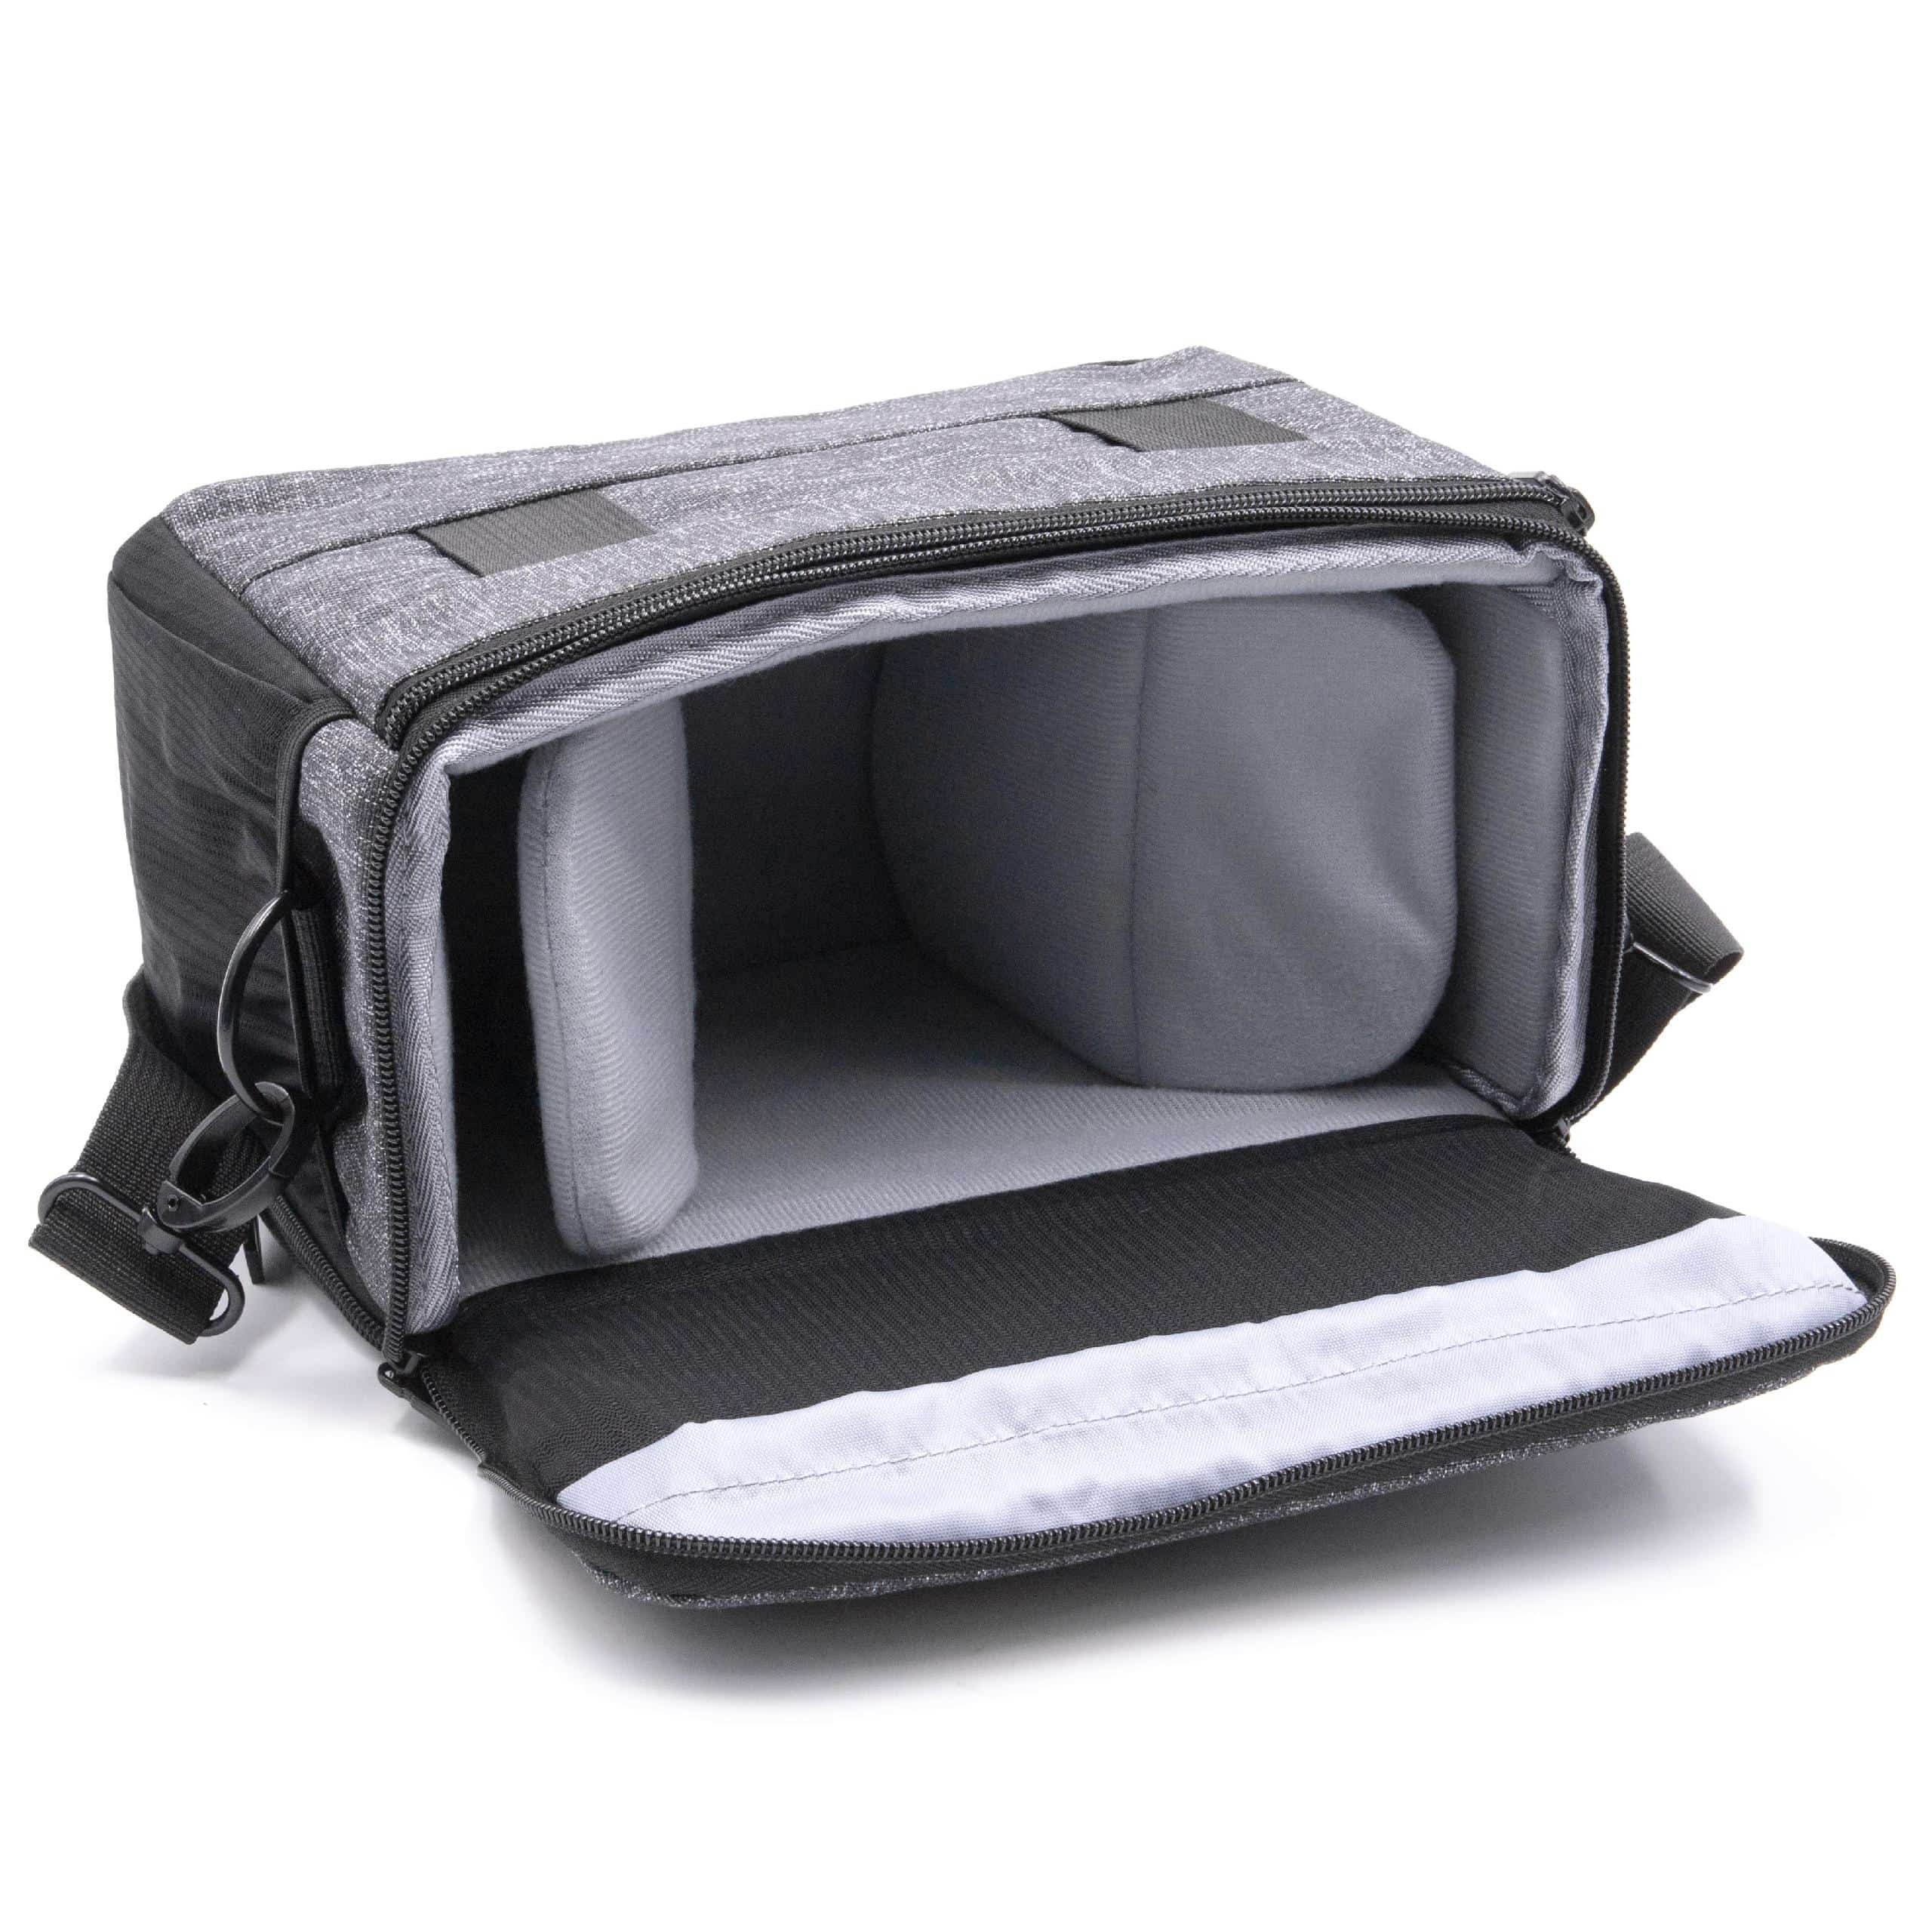 Tasche passend für Pentax Kamera u.a. - Schwarz, Grau, Inkl. Schultergurt, Mit Gürtelschlaufe, Mit Vordertasch